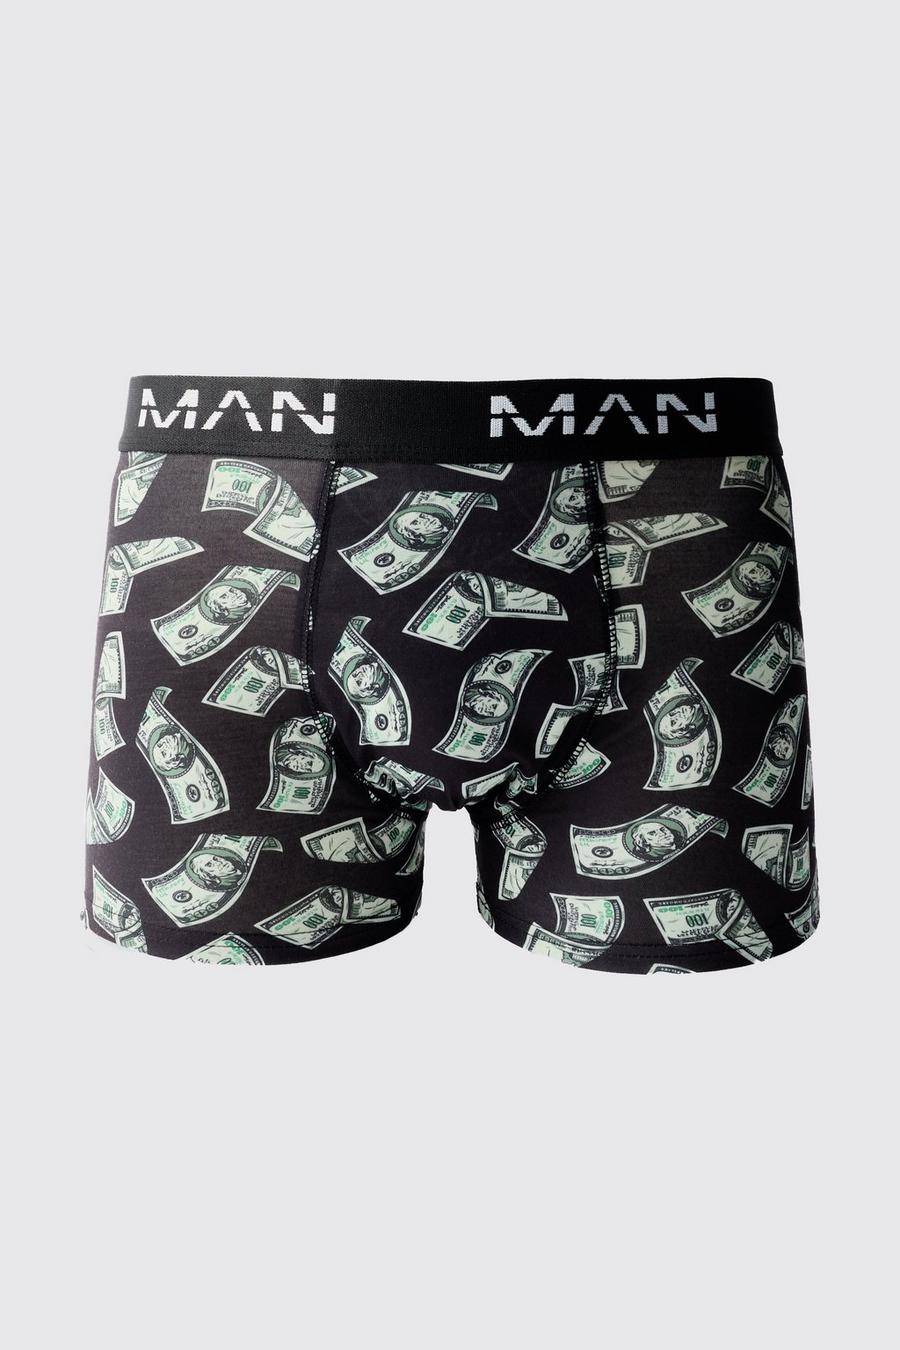 https://media.boohoo.com/i/boohoo/bmm70322_multi_xl/male-multi-man-dollar-bills-printed-boxers/?w=900&qlt=default&fmt.jp2.qlt=70&fmt=auto&sm=fit